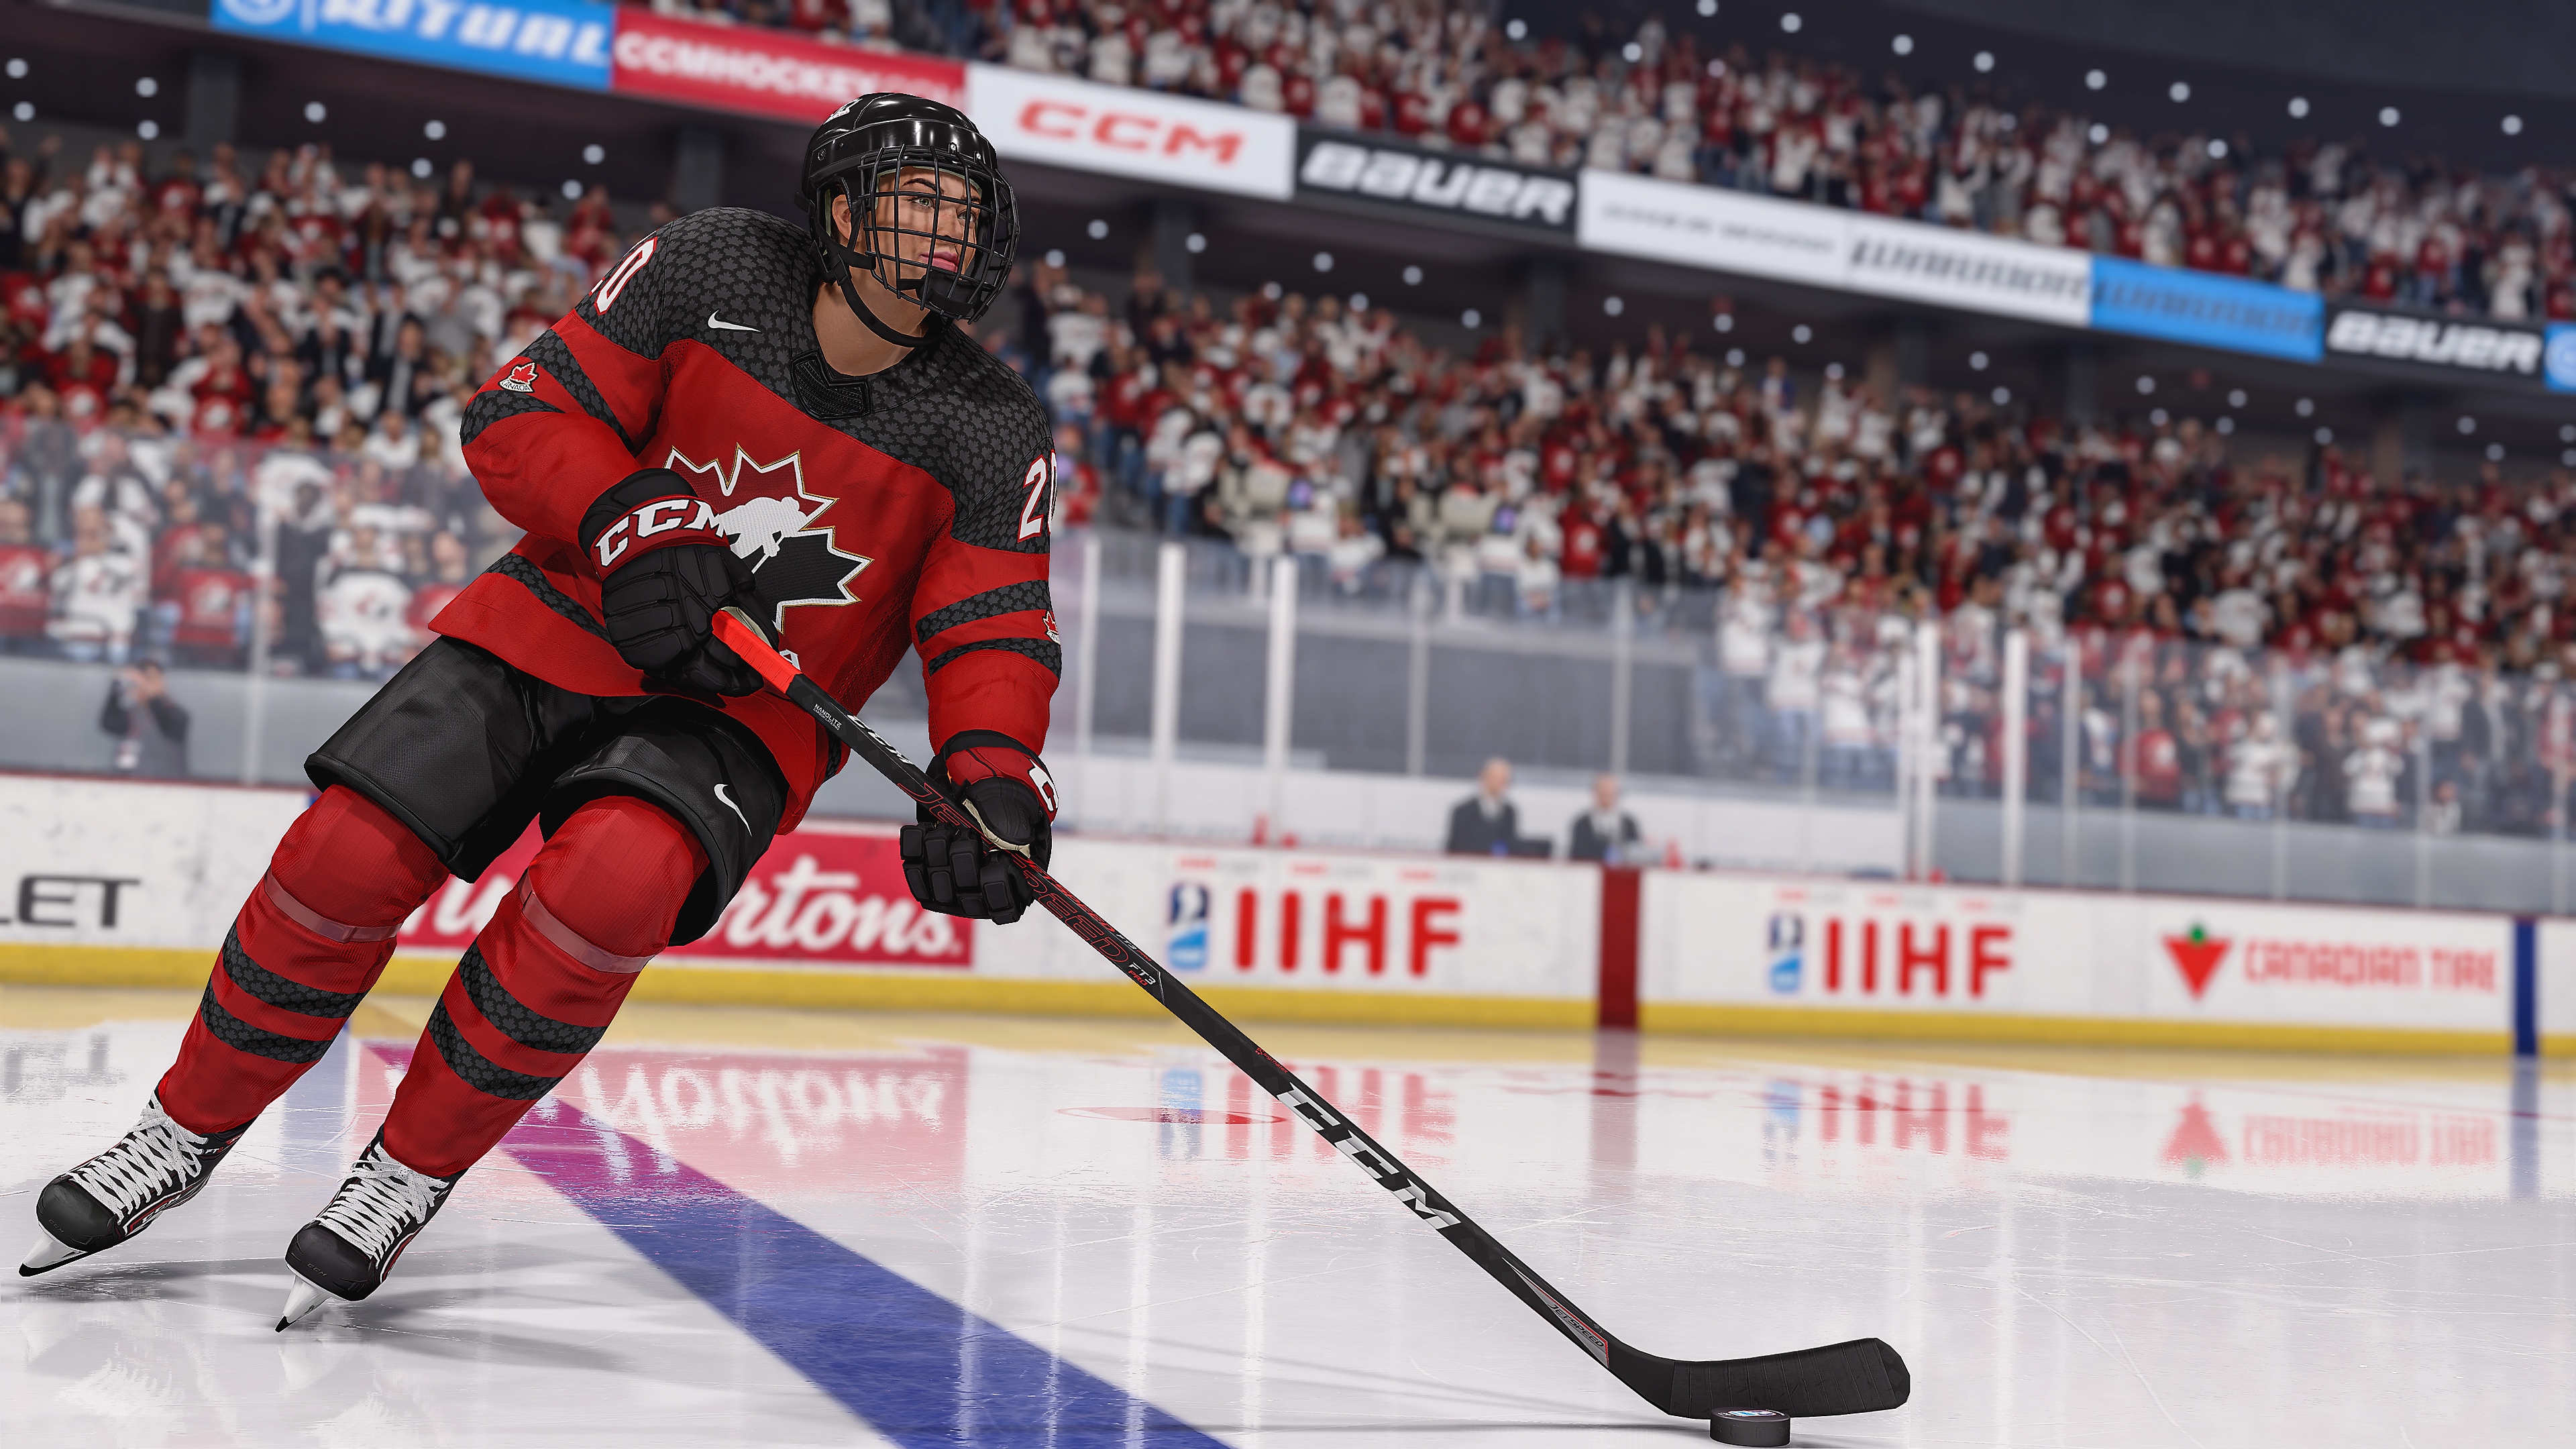 Captura de pantalla de EA Sports NHL 23 de un jugador de hockey patinando con el disco.